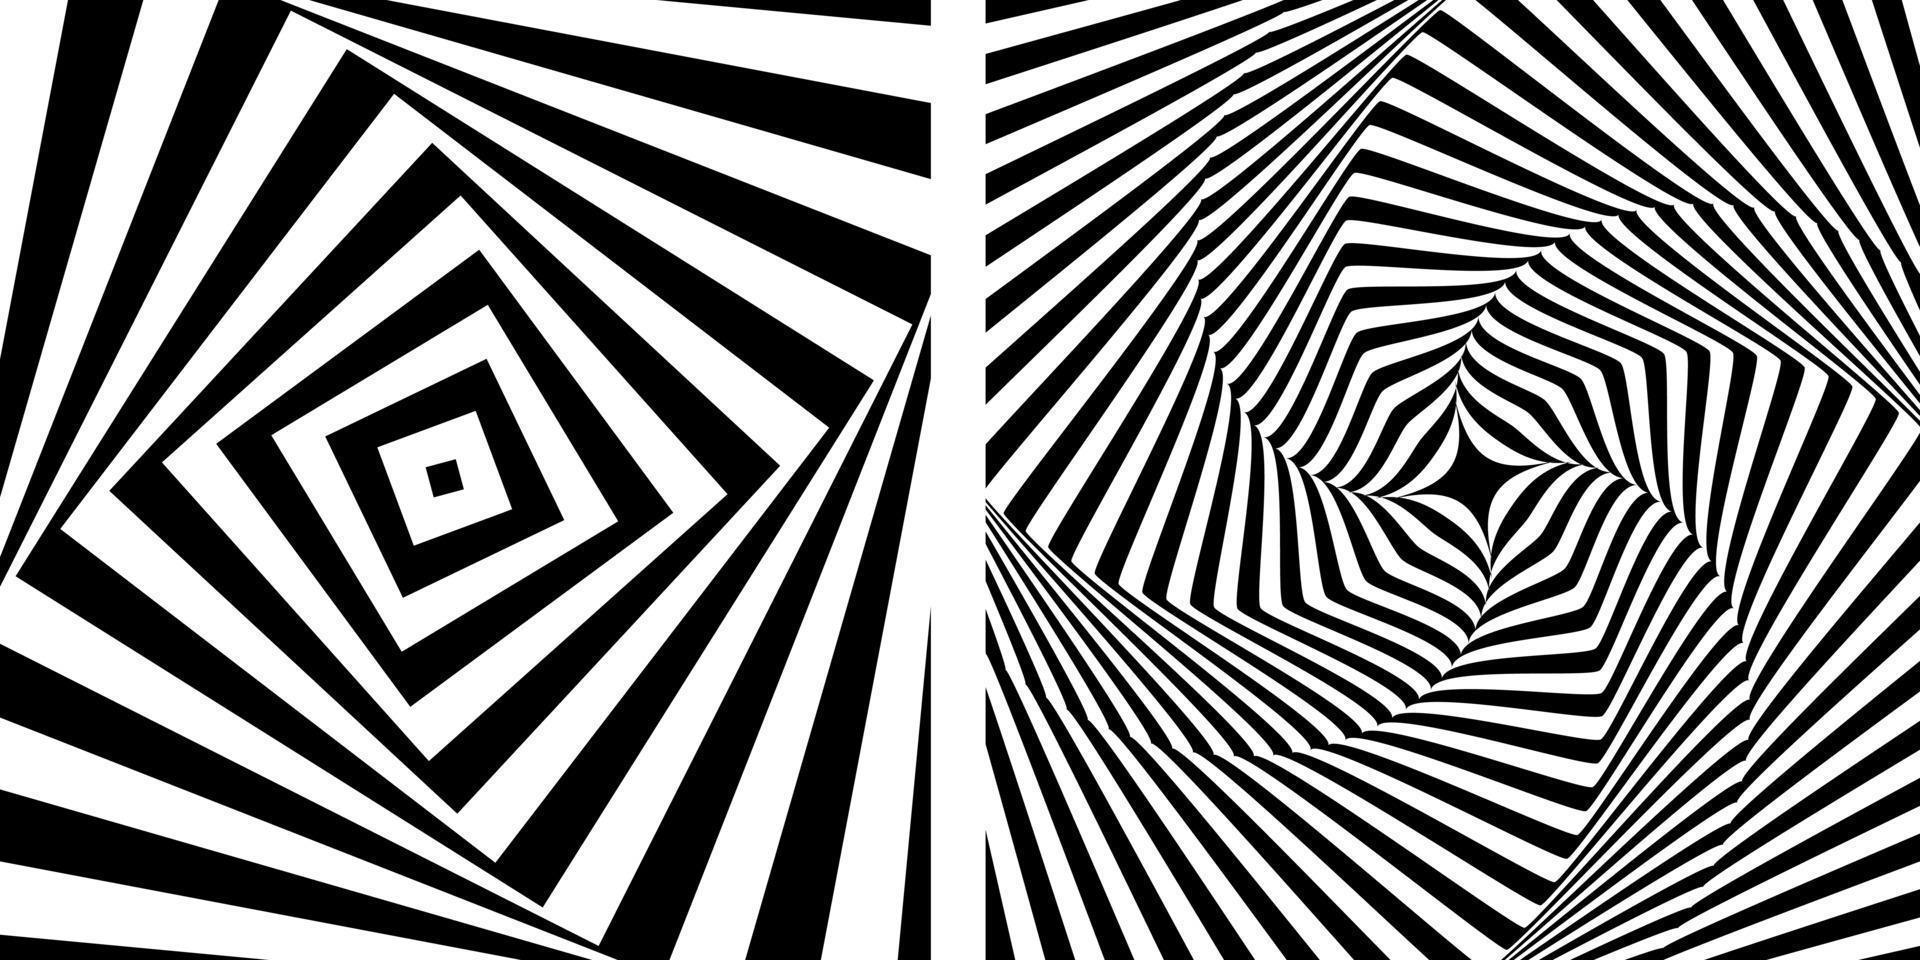 abstrakte Hintergrundlinie überlappende Rechtecke, die es wirbeln, ist ein schwarzes Muster auf weißem Hintergrund. es kann eine tapete, ein stoffmuster oder eine andere bildarbeit sein. vektor